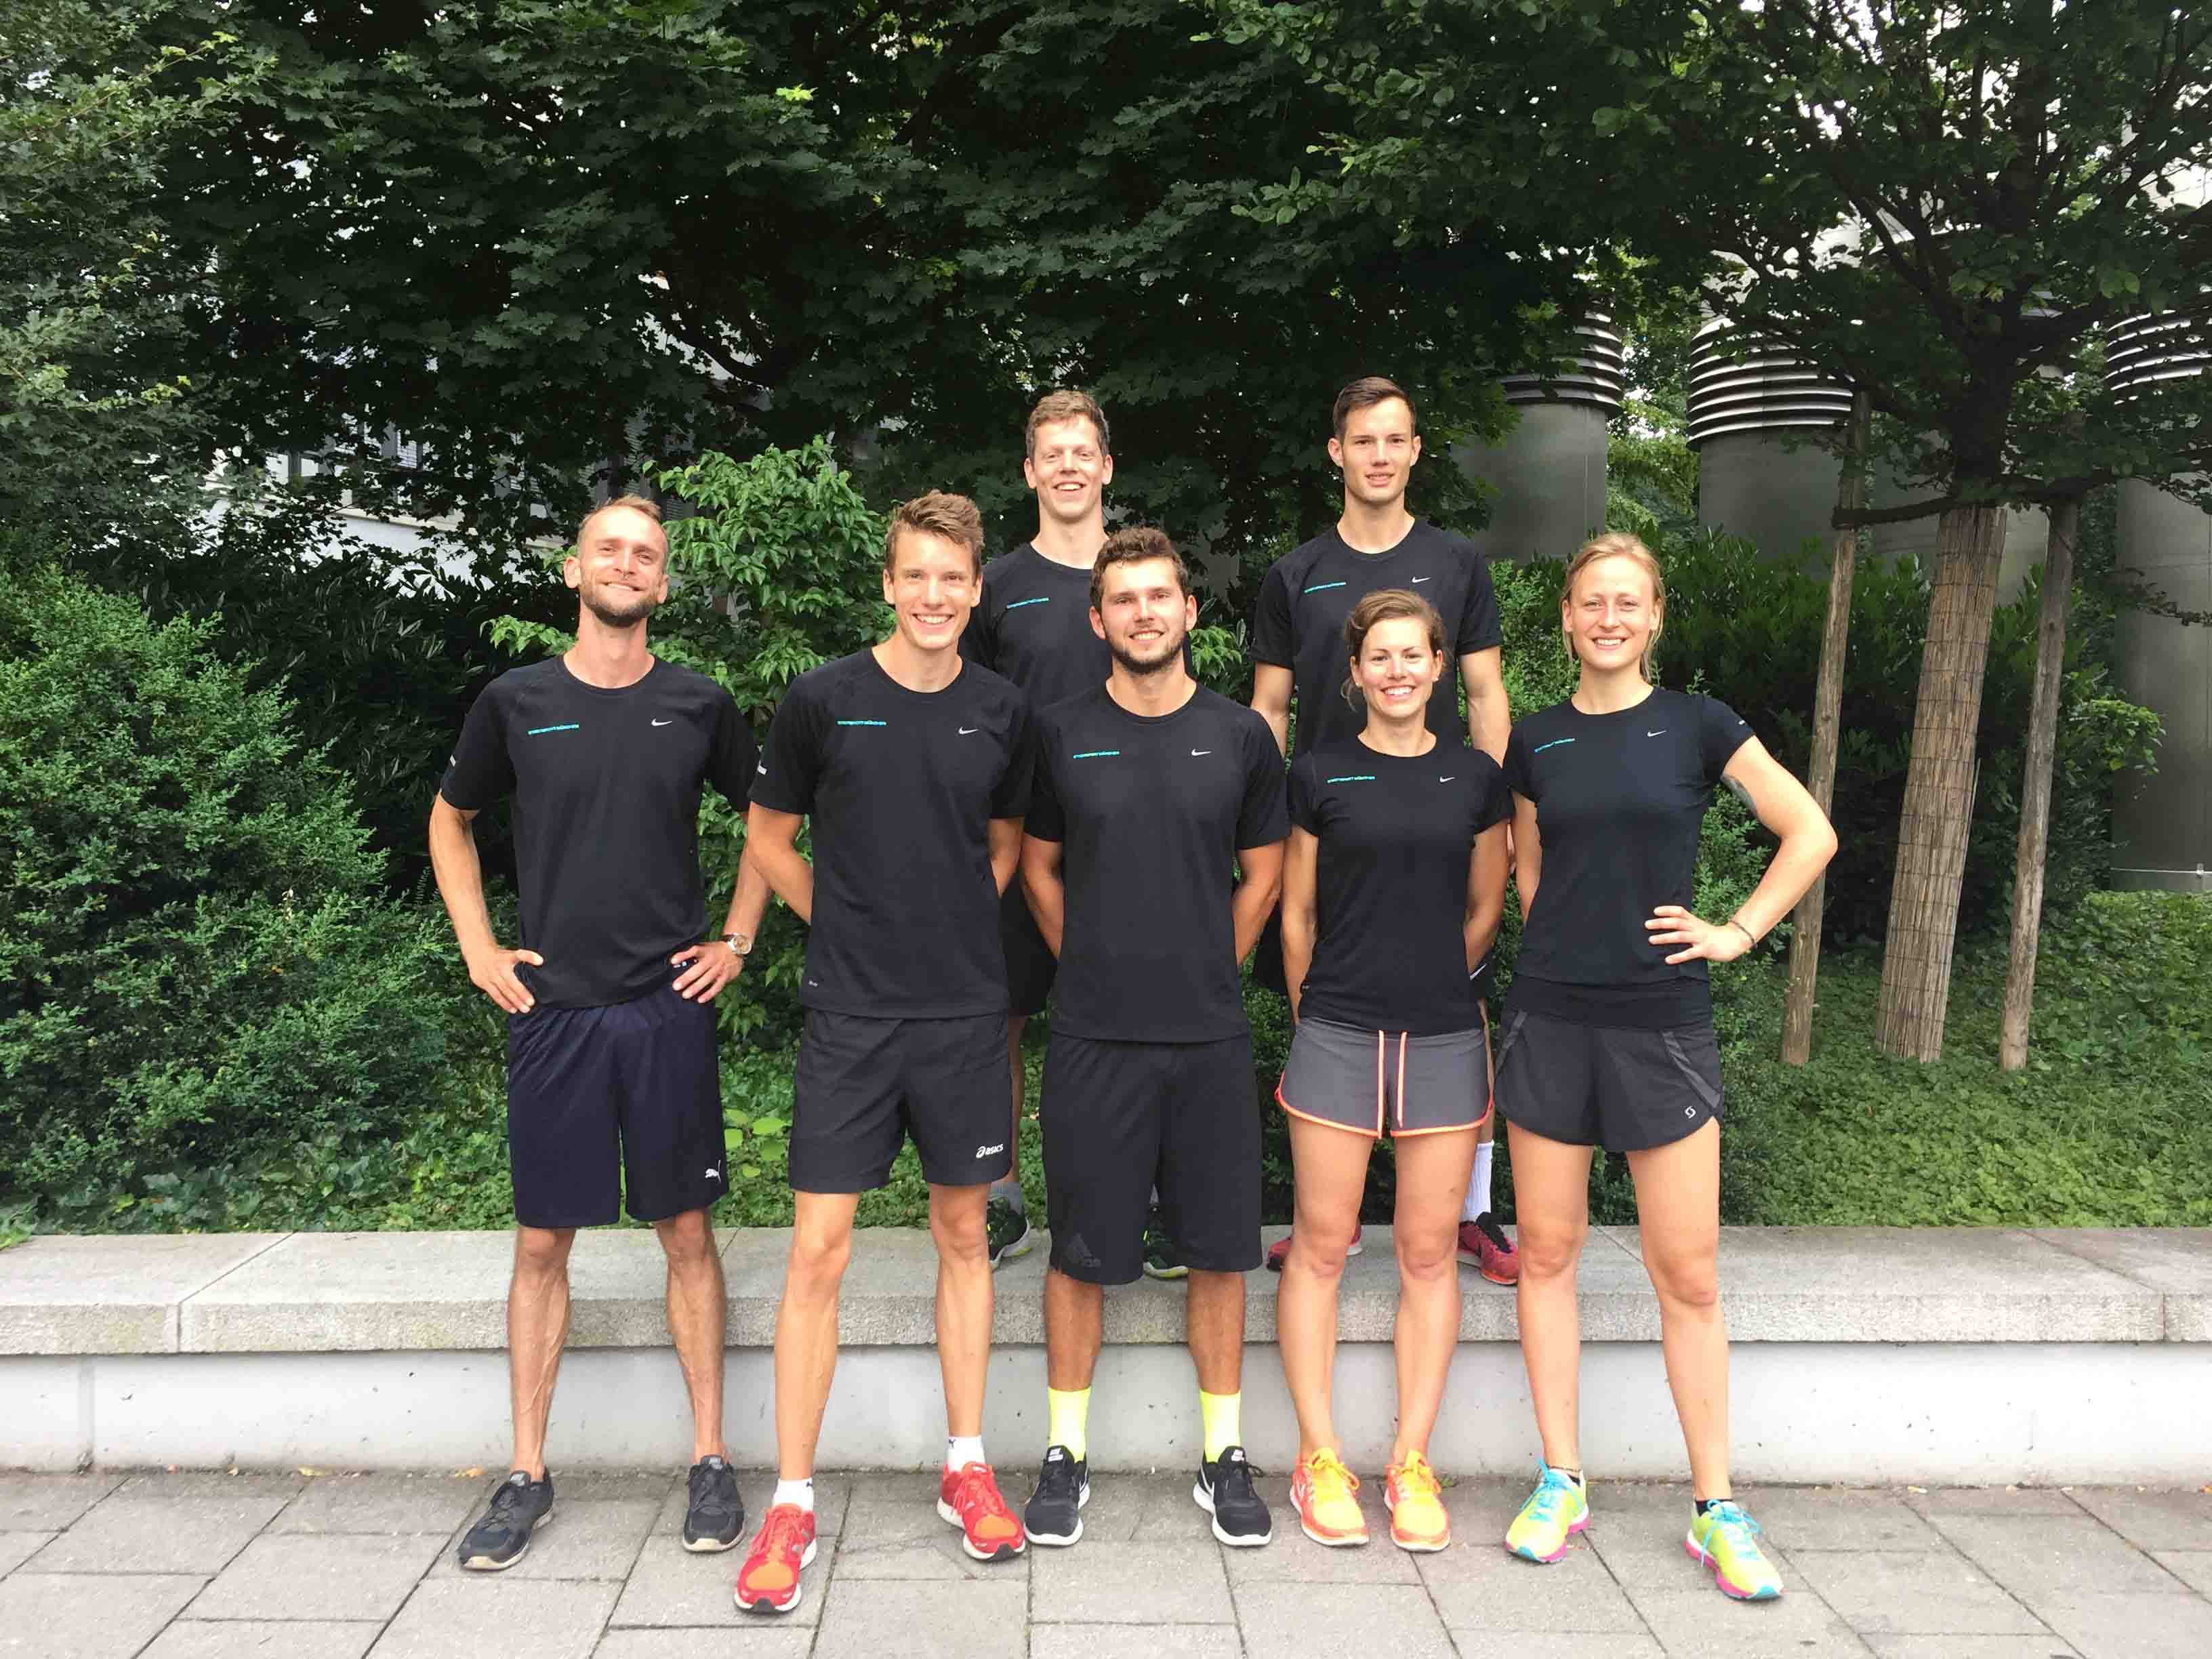 Stadtsport München Team 2016